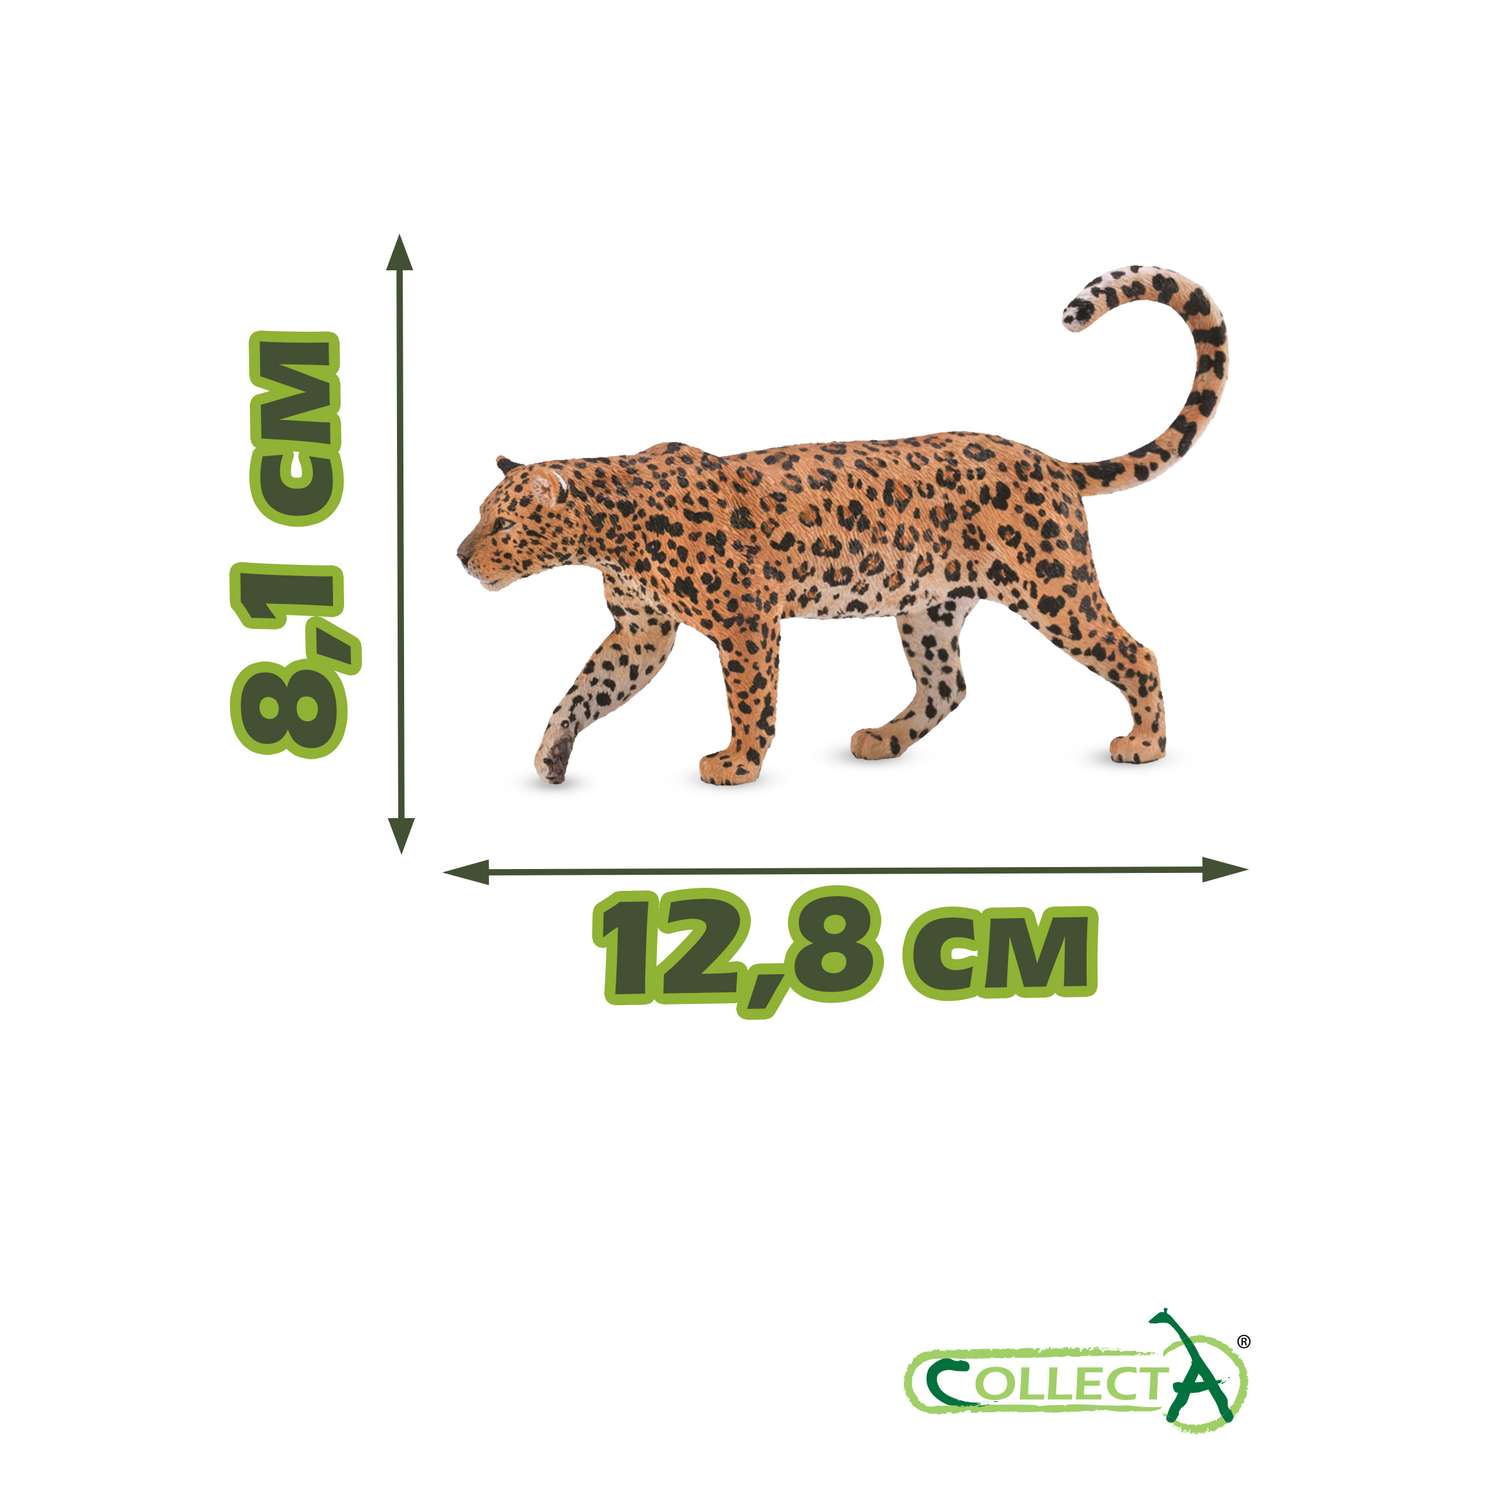 Фигурка животного Collecta Леопард Африканский - фото 2